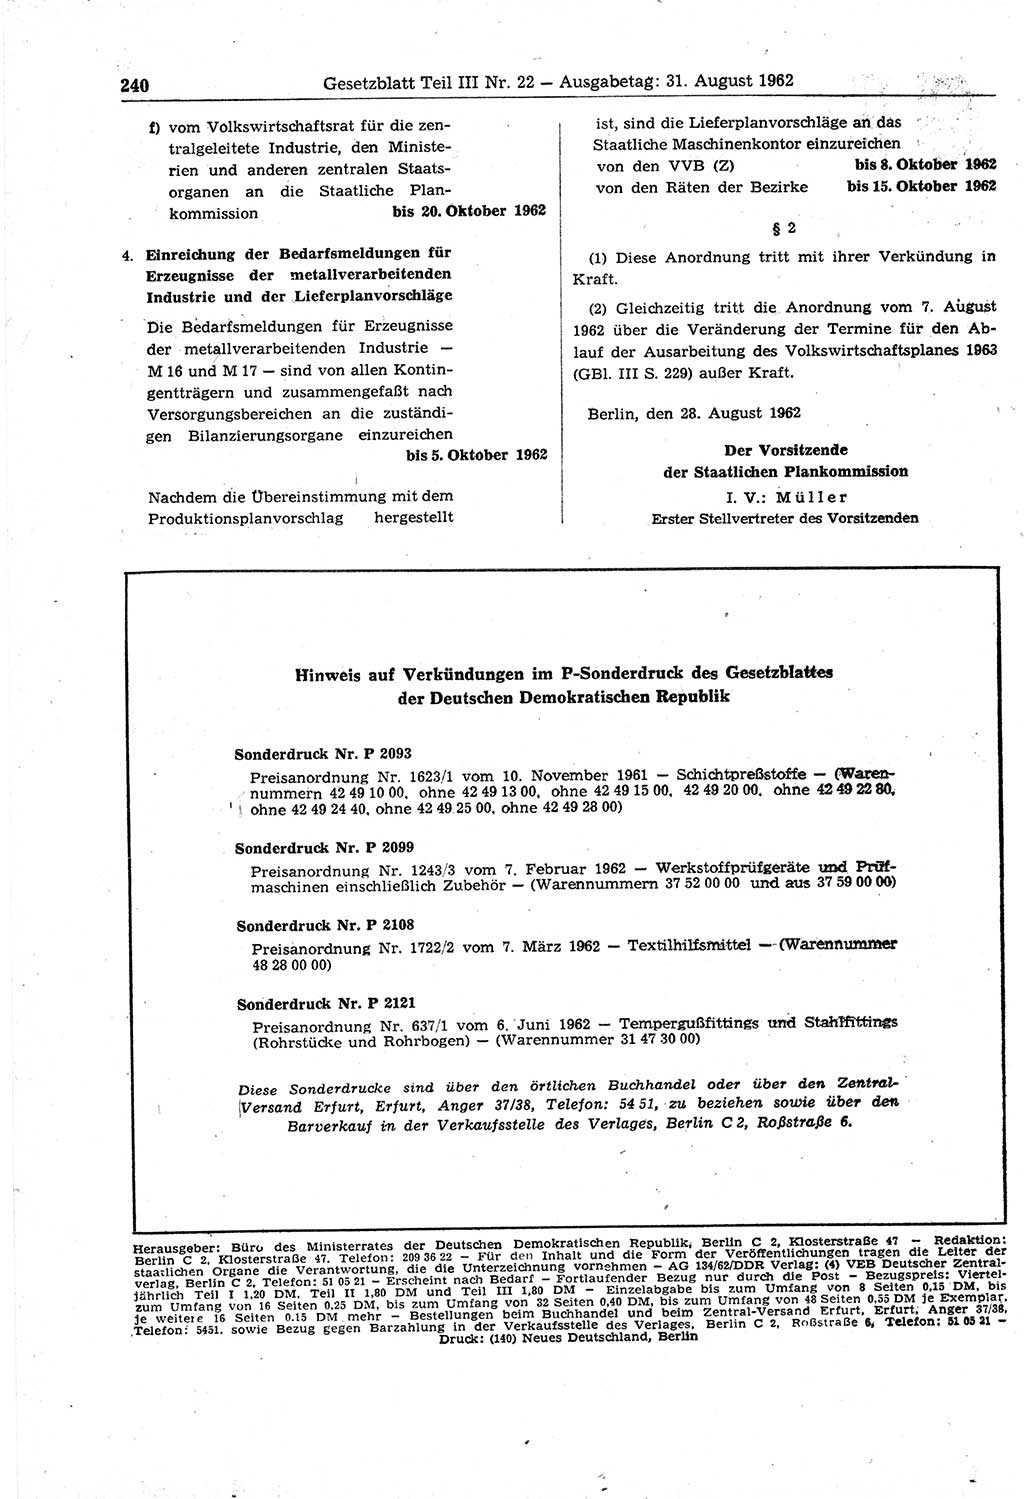 Gesetzblatt (GBl.) der Deutschen Demokratischen Republik (DDR) Teil ⅠⅠⅠ 1962, Seite 240 (GBl. DDR ⅠⅠⅠ 1962, S. 240)